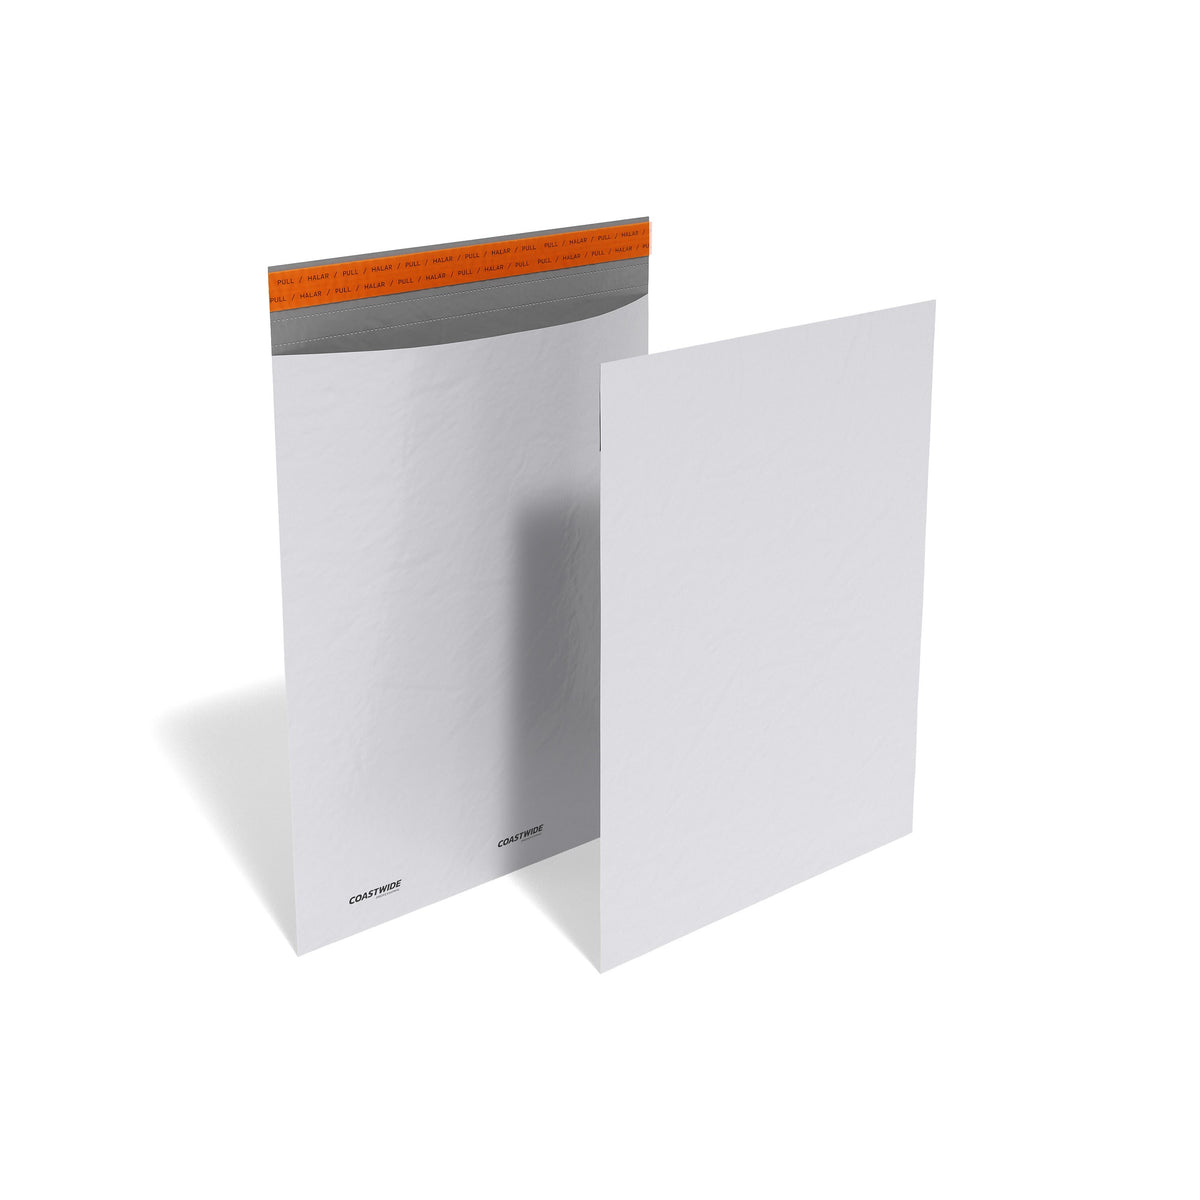 14 x 17 Self-Sealing Poly Mailer, White, 100/Box